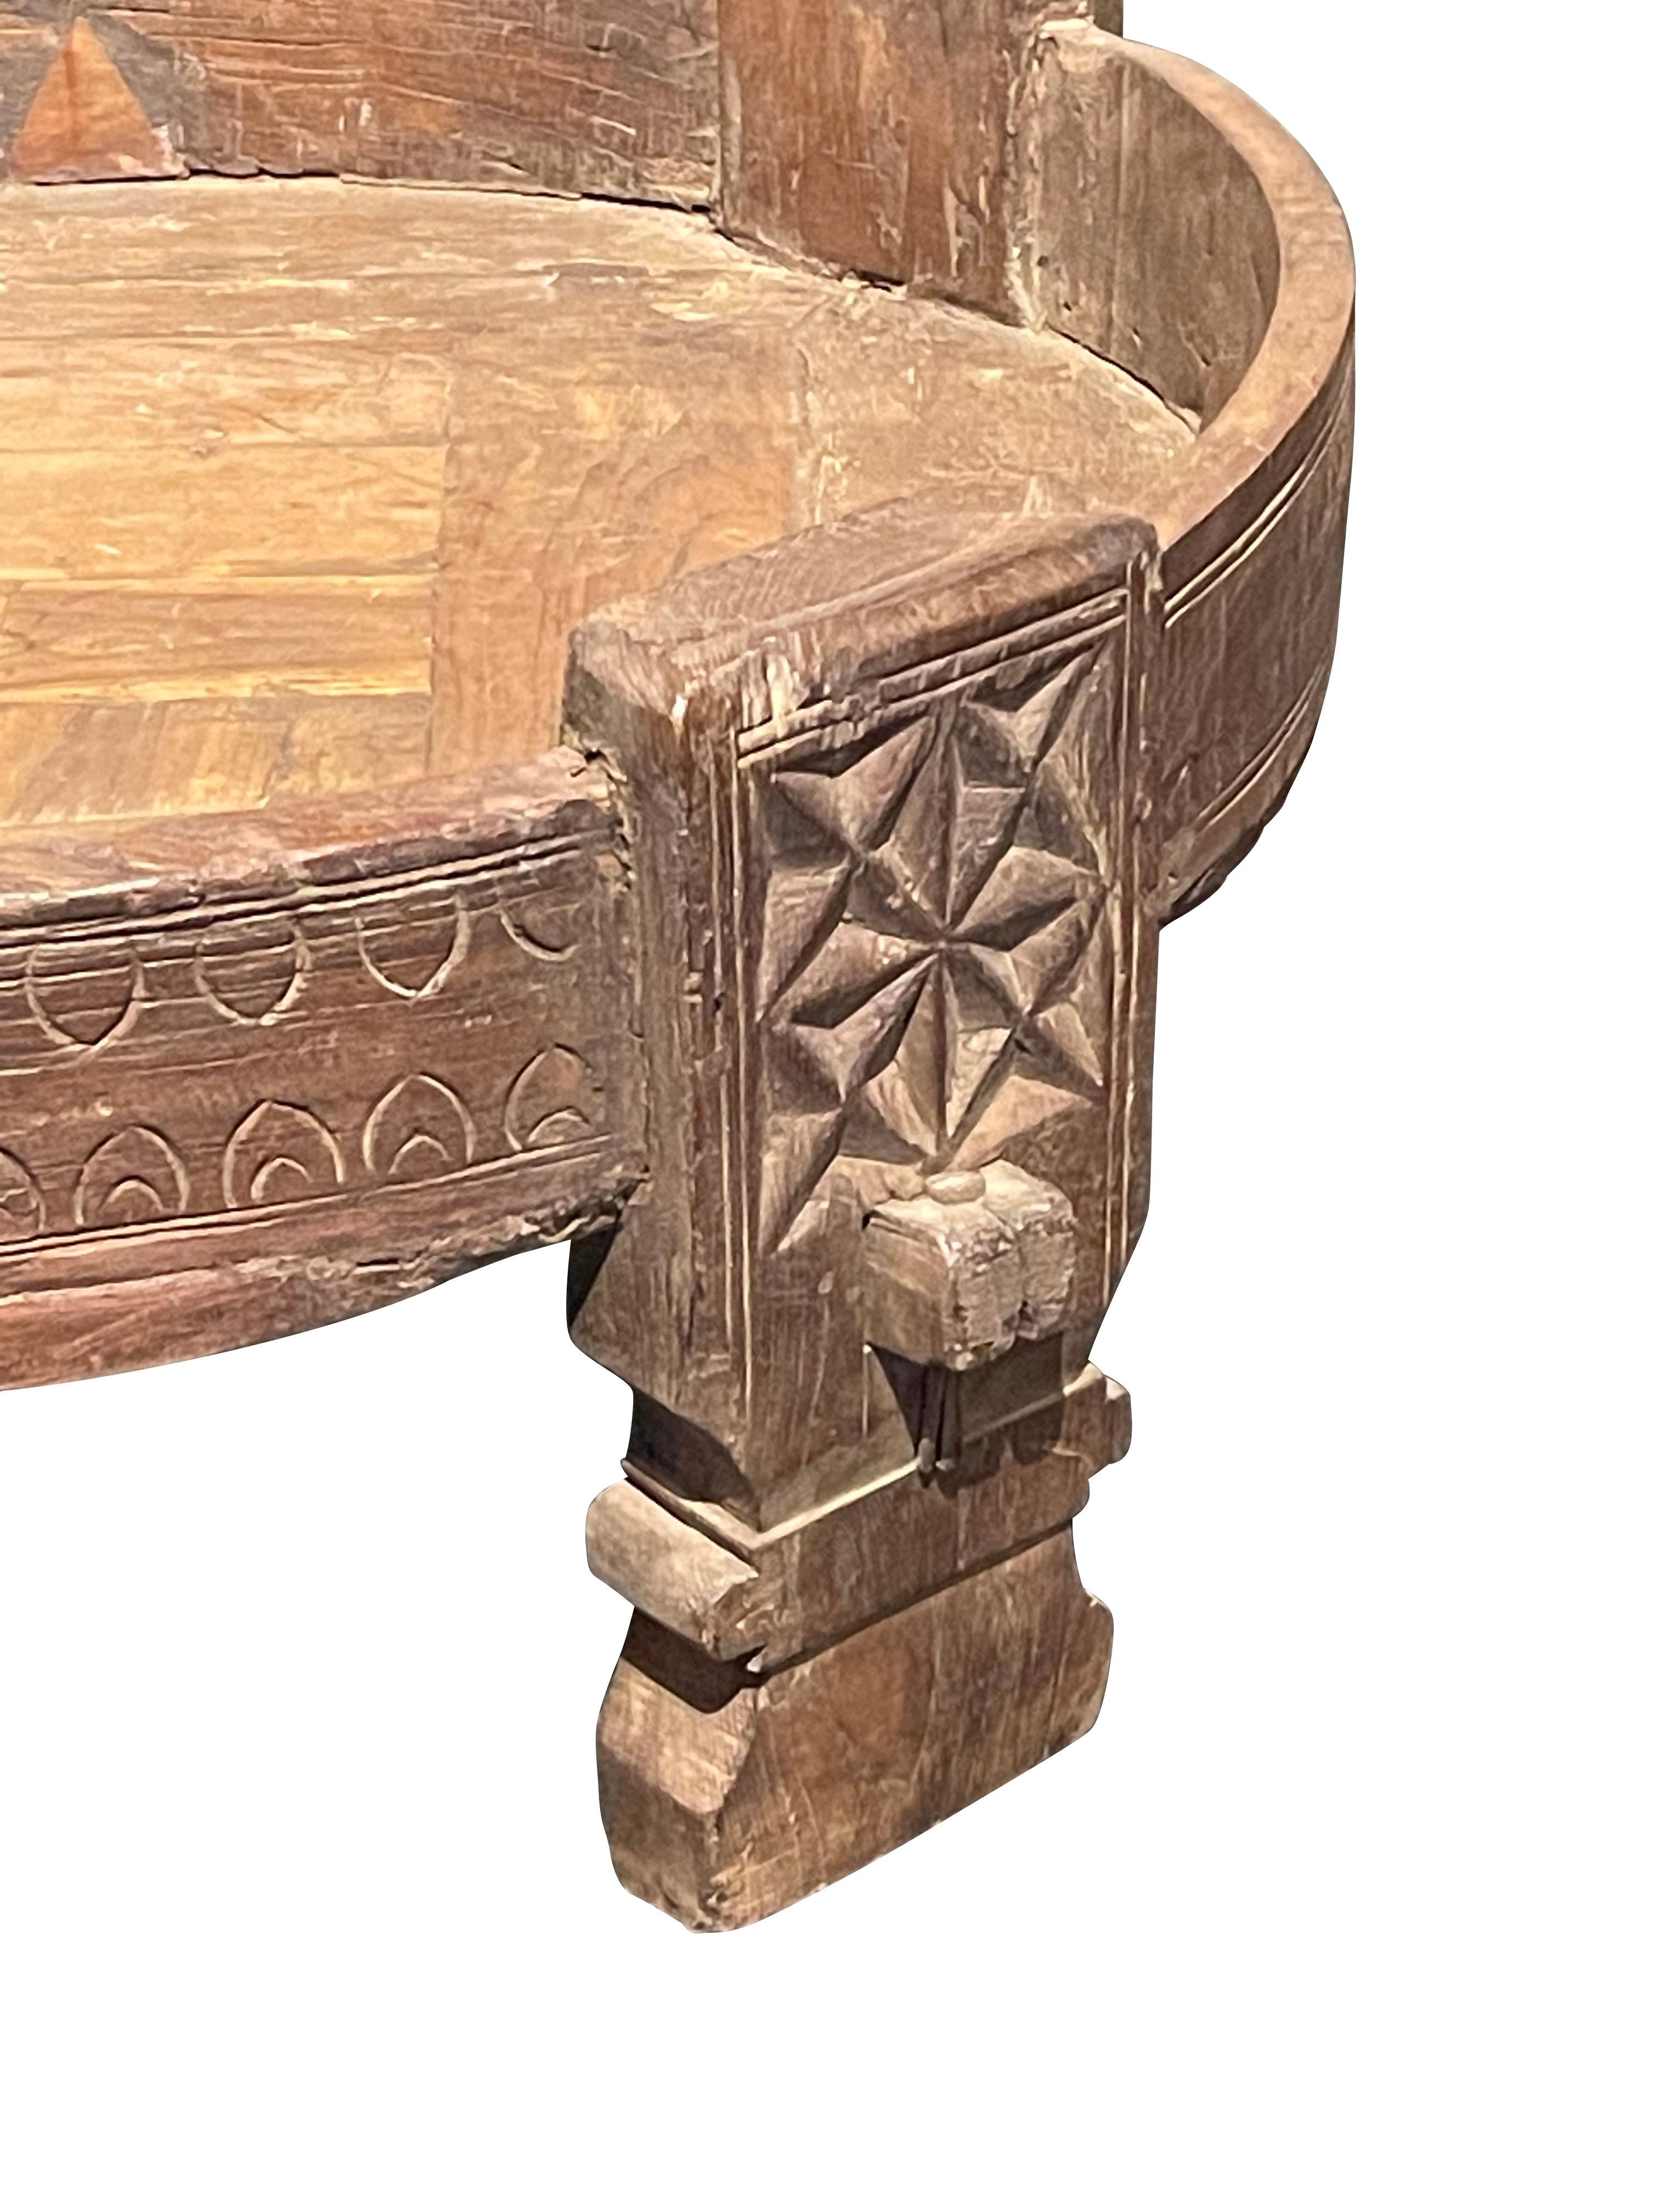 Bol en bois rond à grands pieds indien du 19ème siècle.
Garniture en fer.
Quatre jambes.
Des sculptures décoratives sur les jambes et l'extérieur du bol sont visibles.